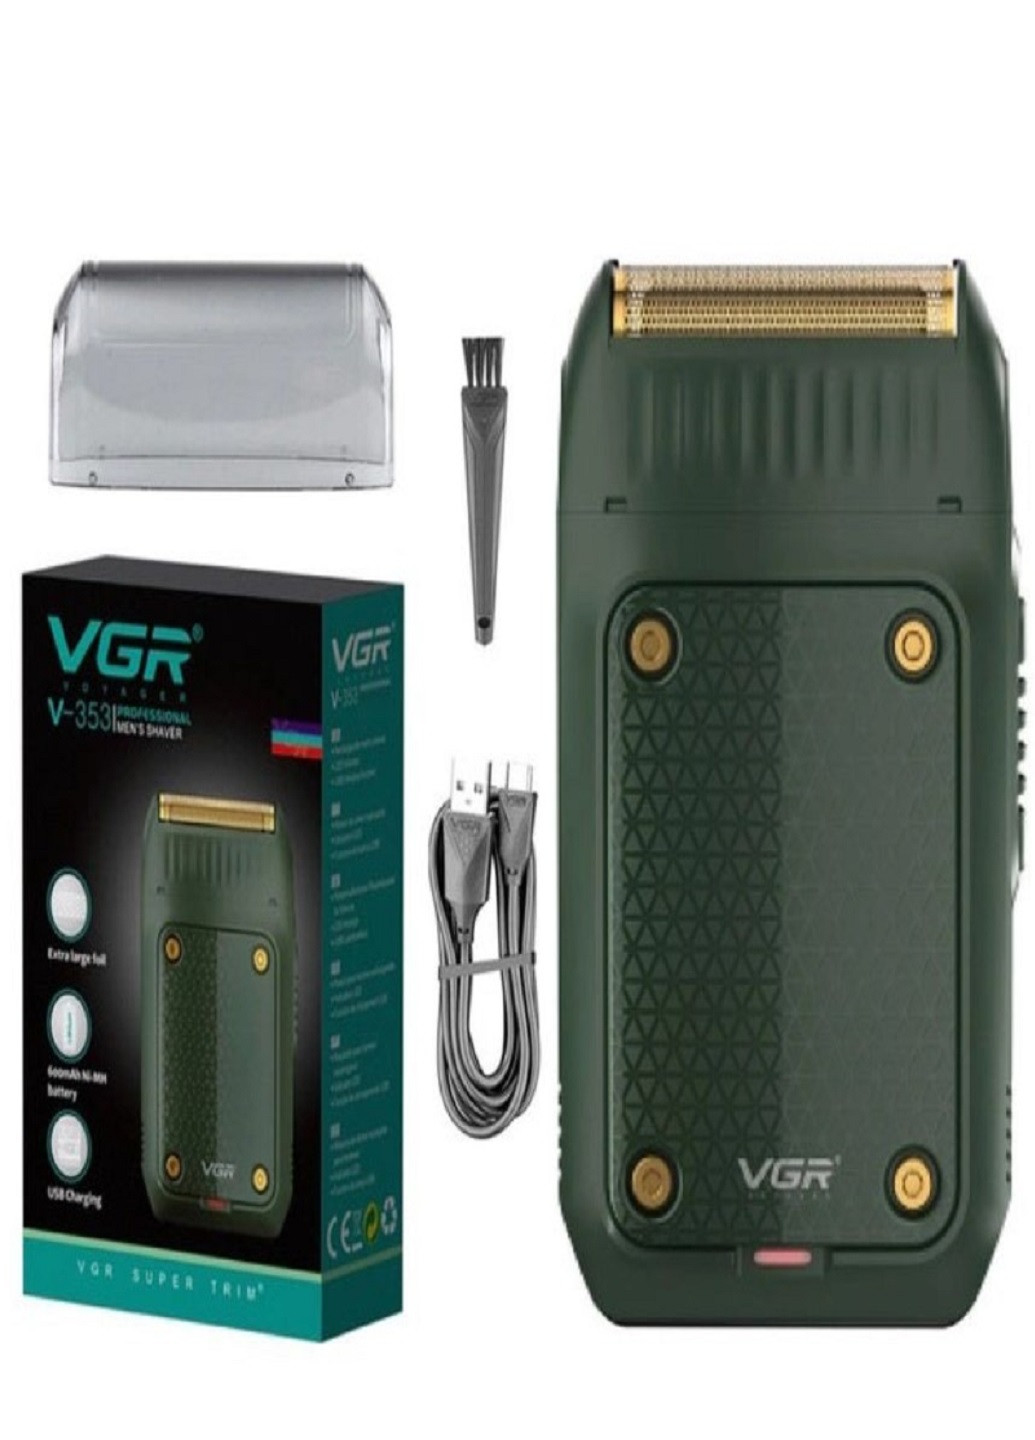 Электробритва V-353 бритва аккумуляторная VGR (277979649)